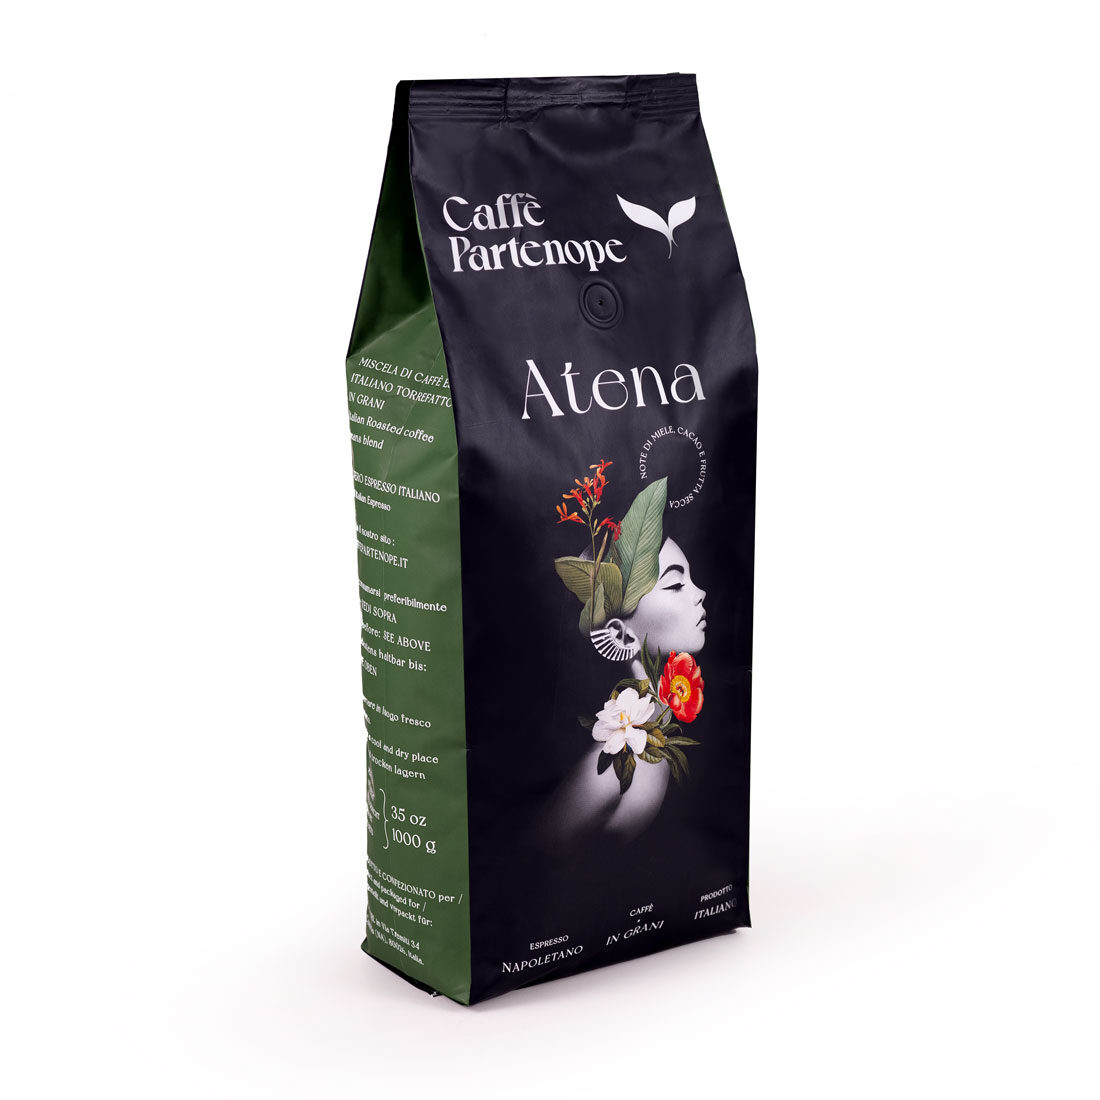 Atena - Miscela di caffè in grani - Caffè Partenope